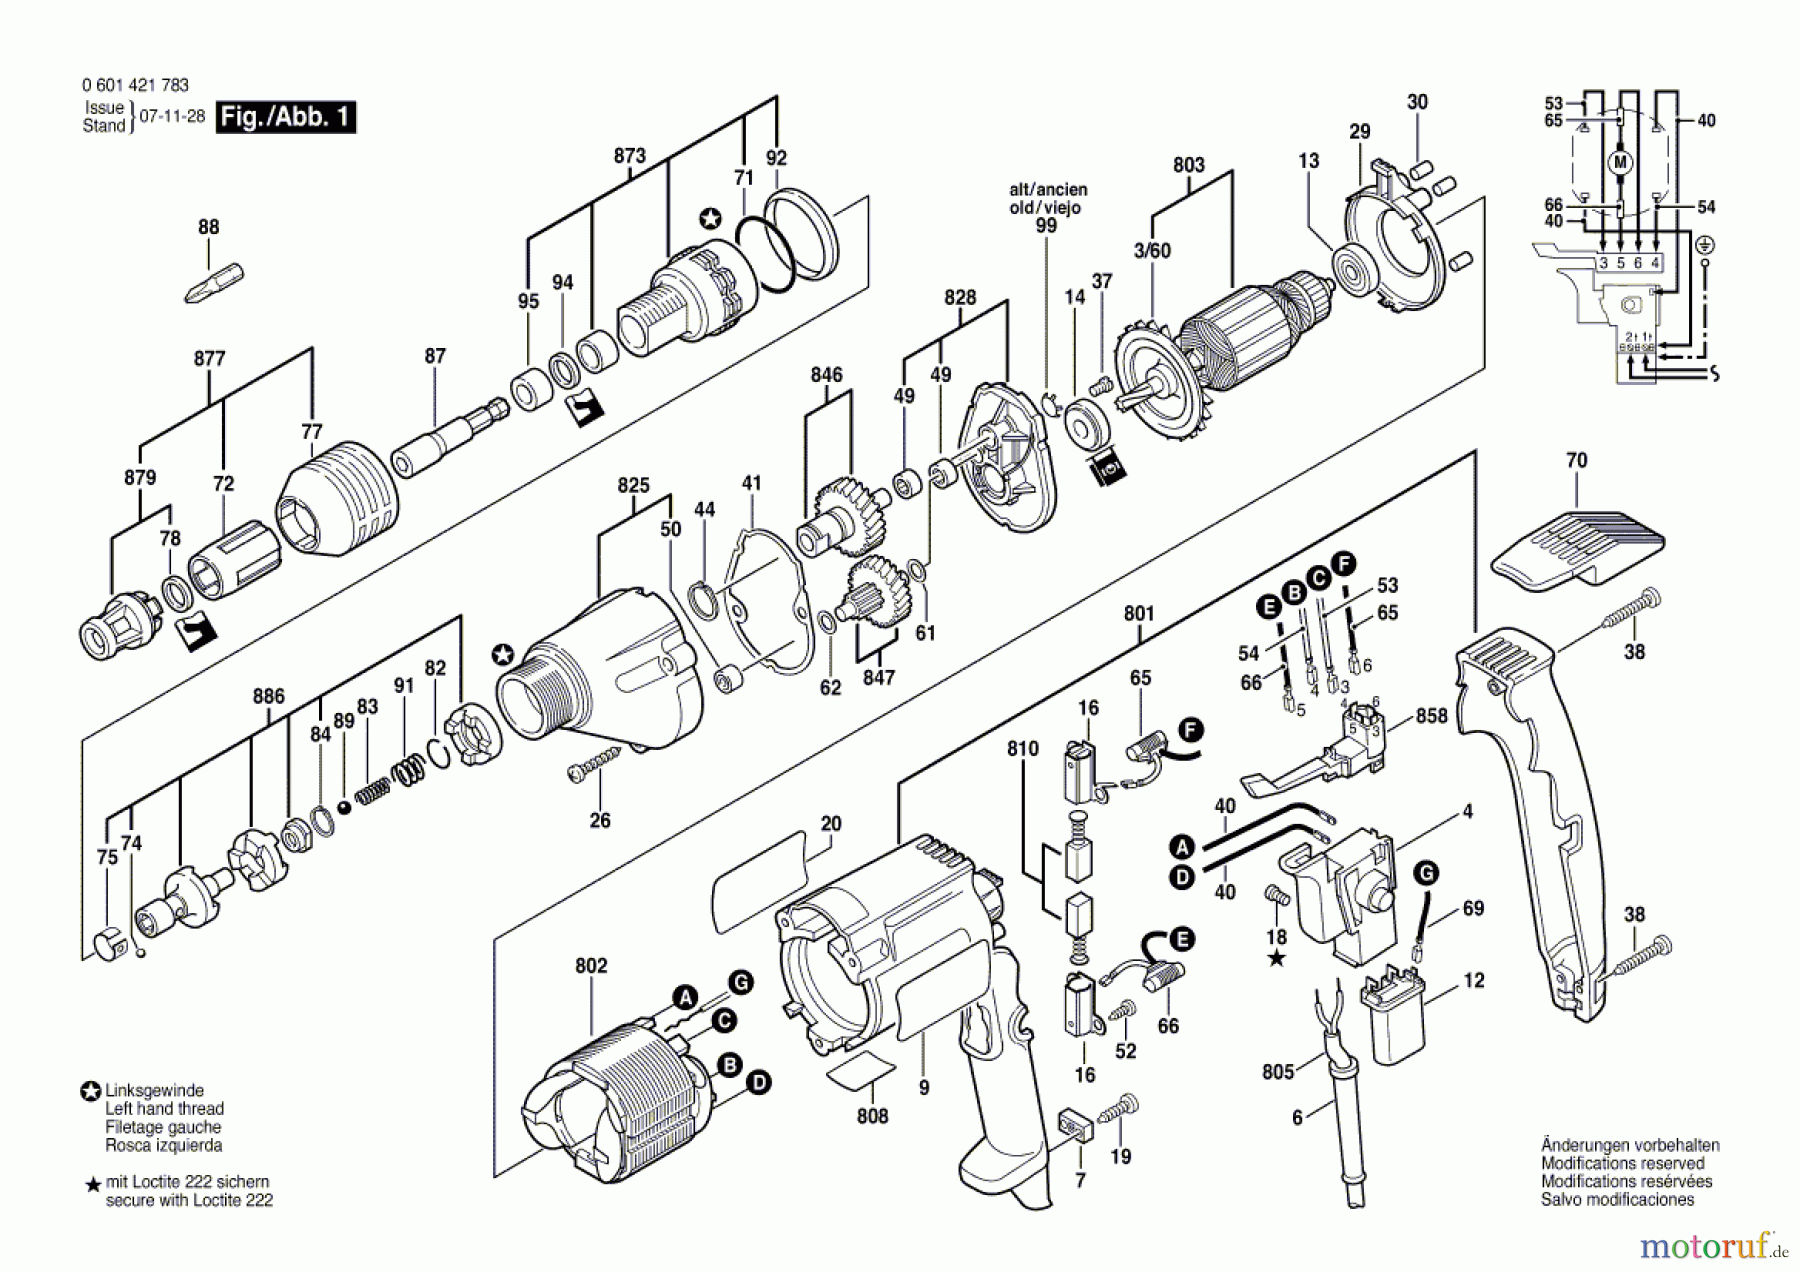  Bosch Werkzeug Bohrschrauber BSR 6-25 TE Seite 1